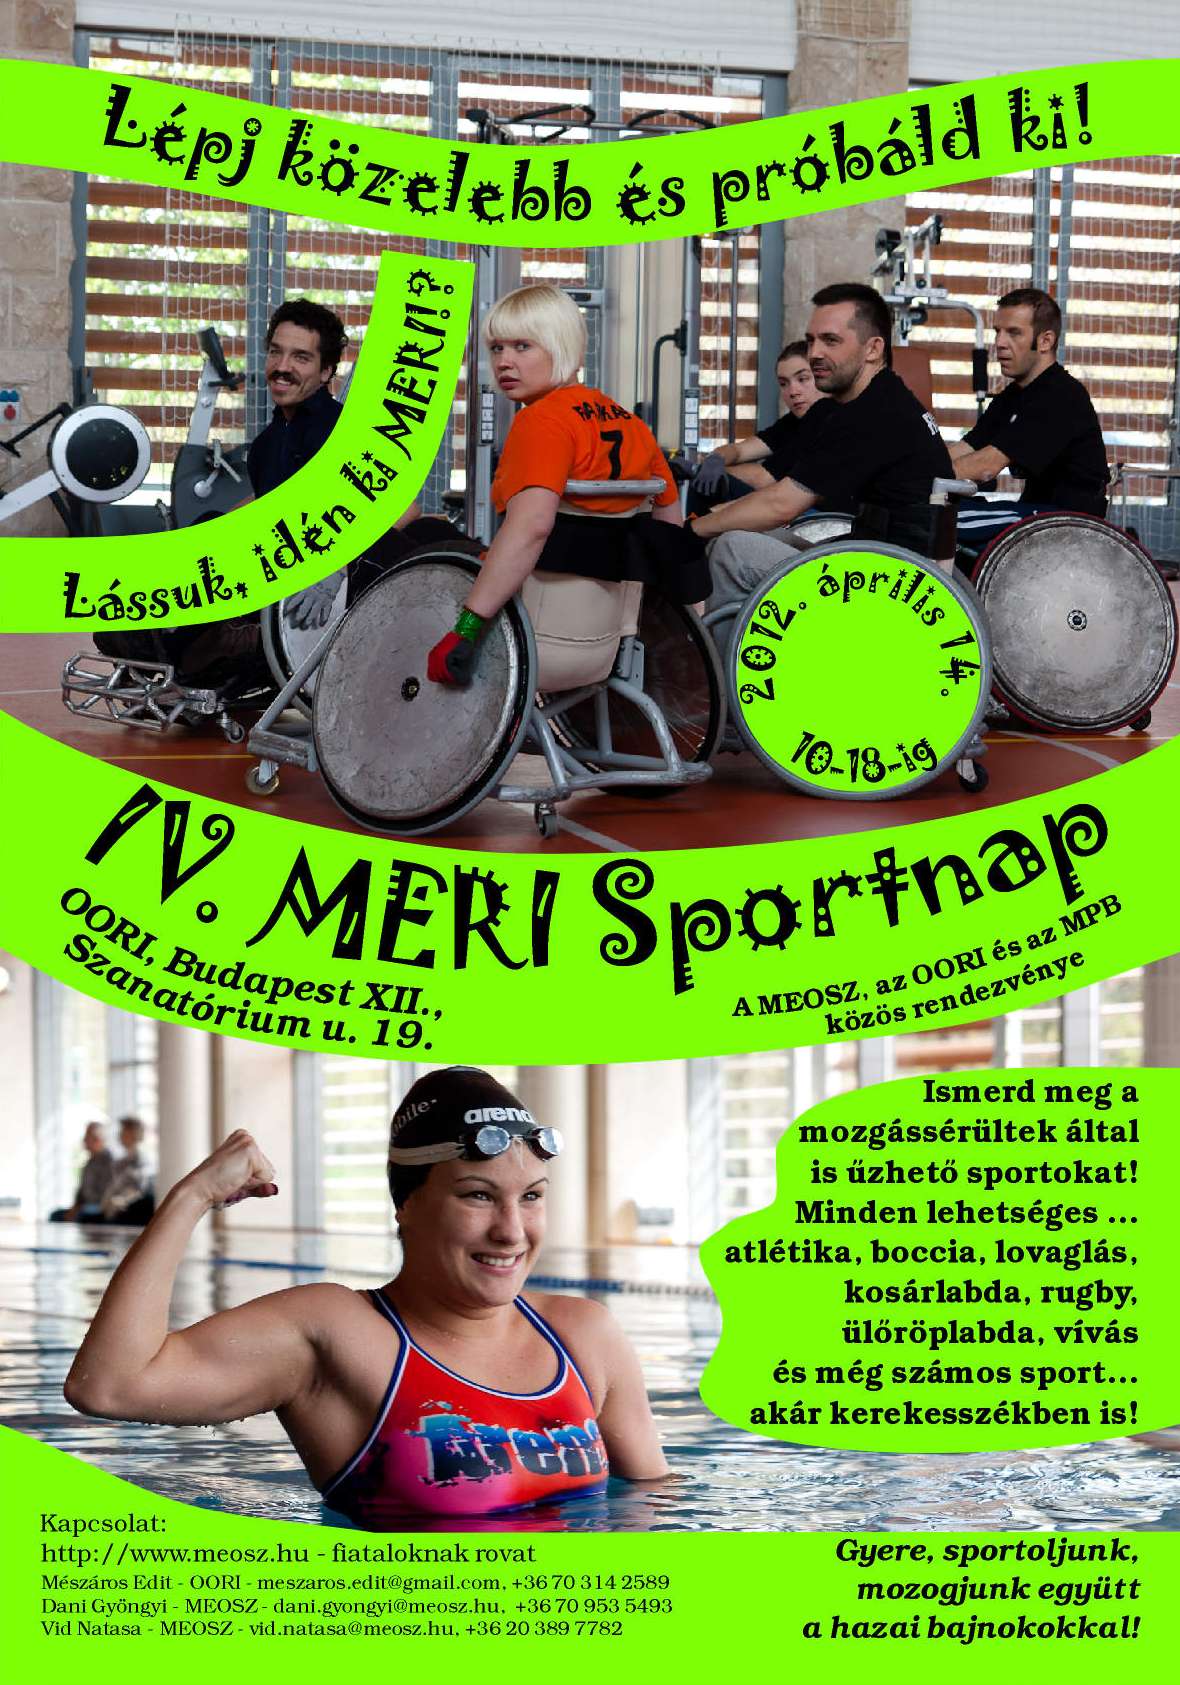 IV. MERI Sportnap